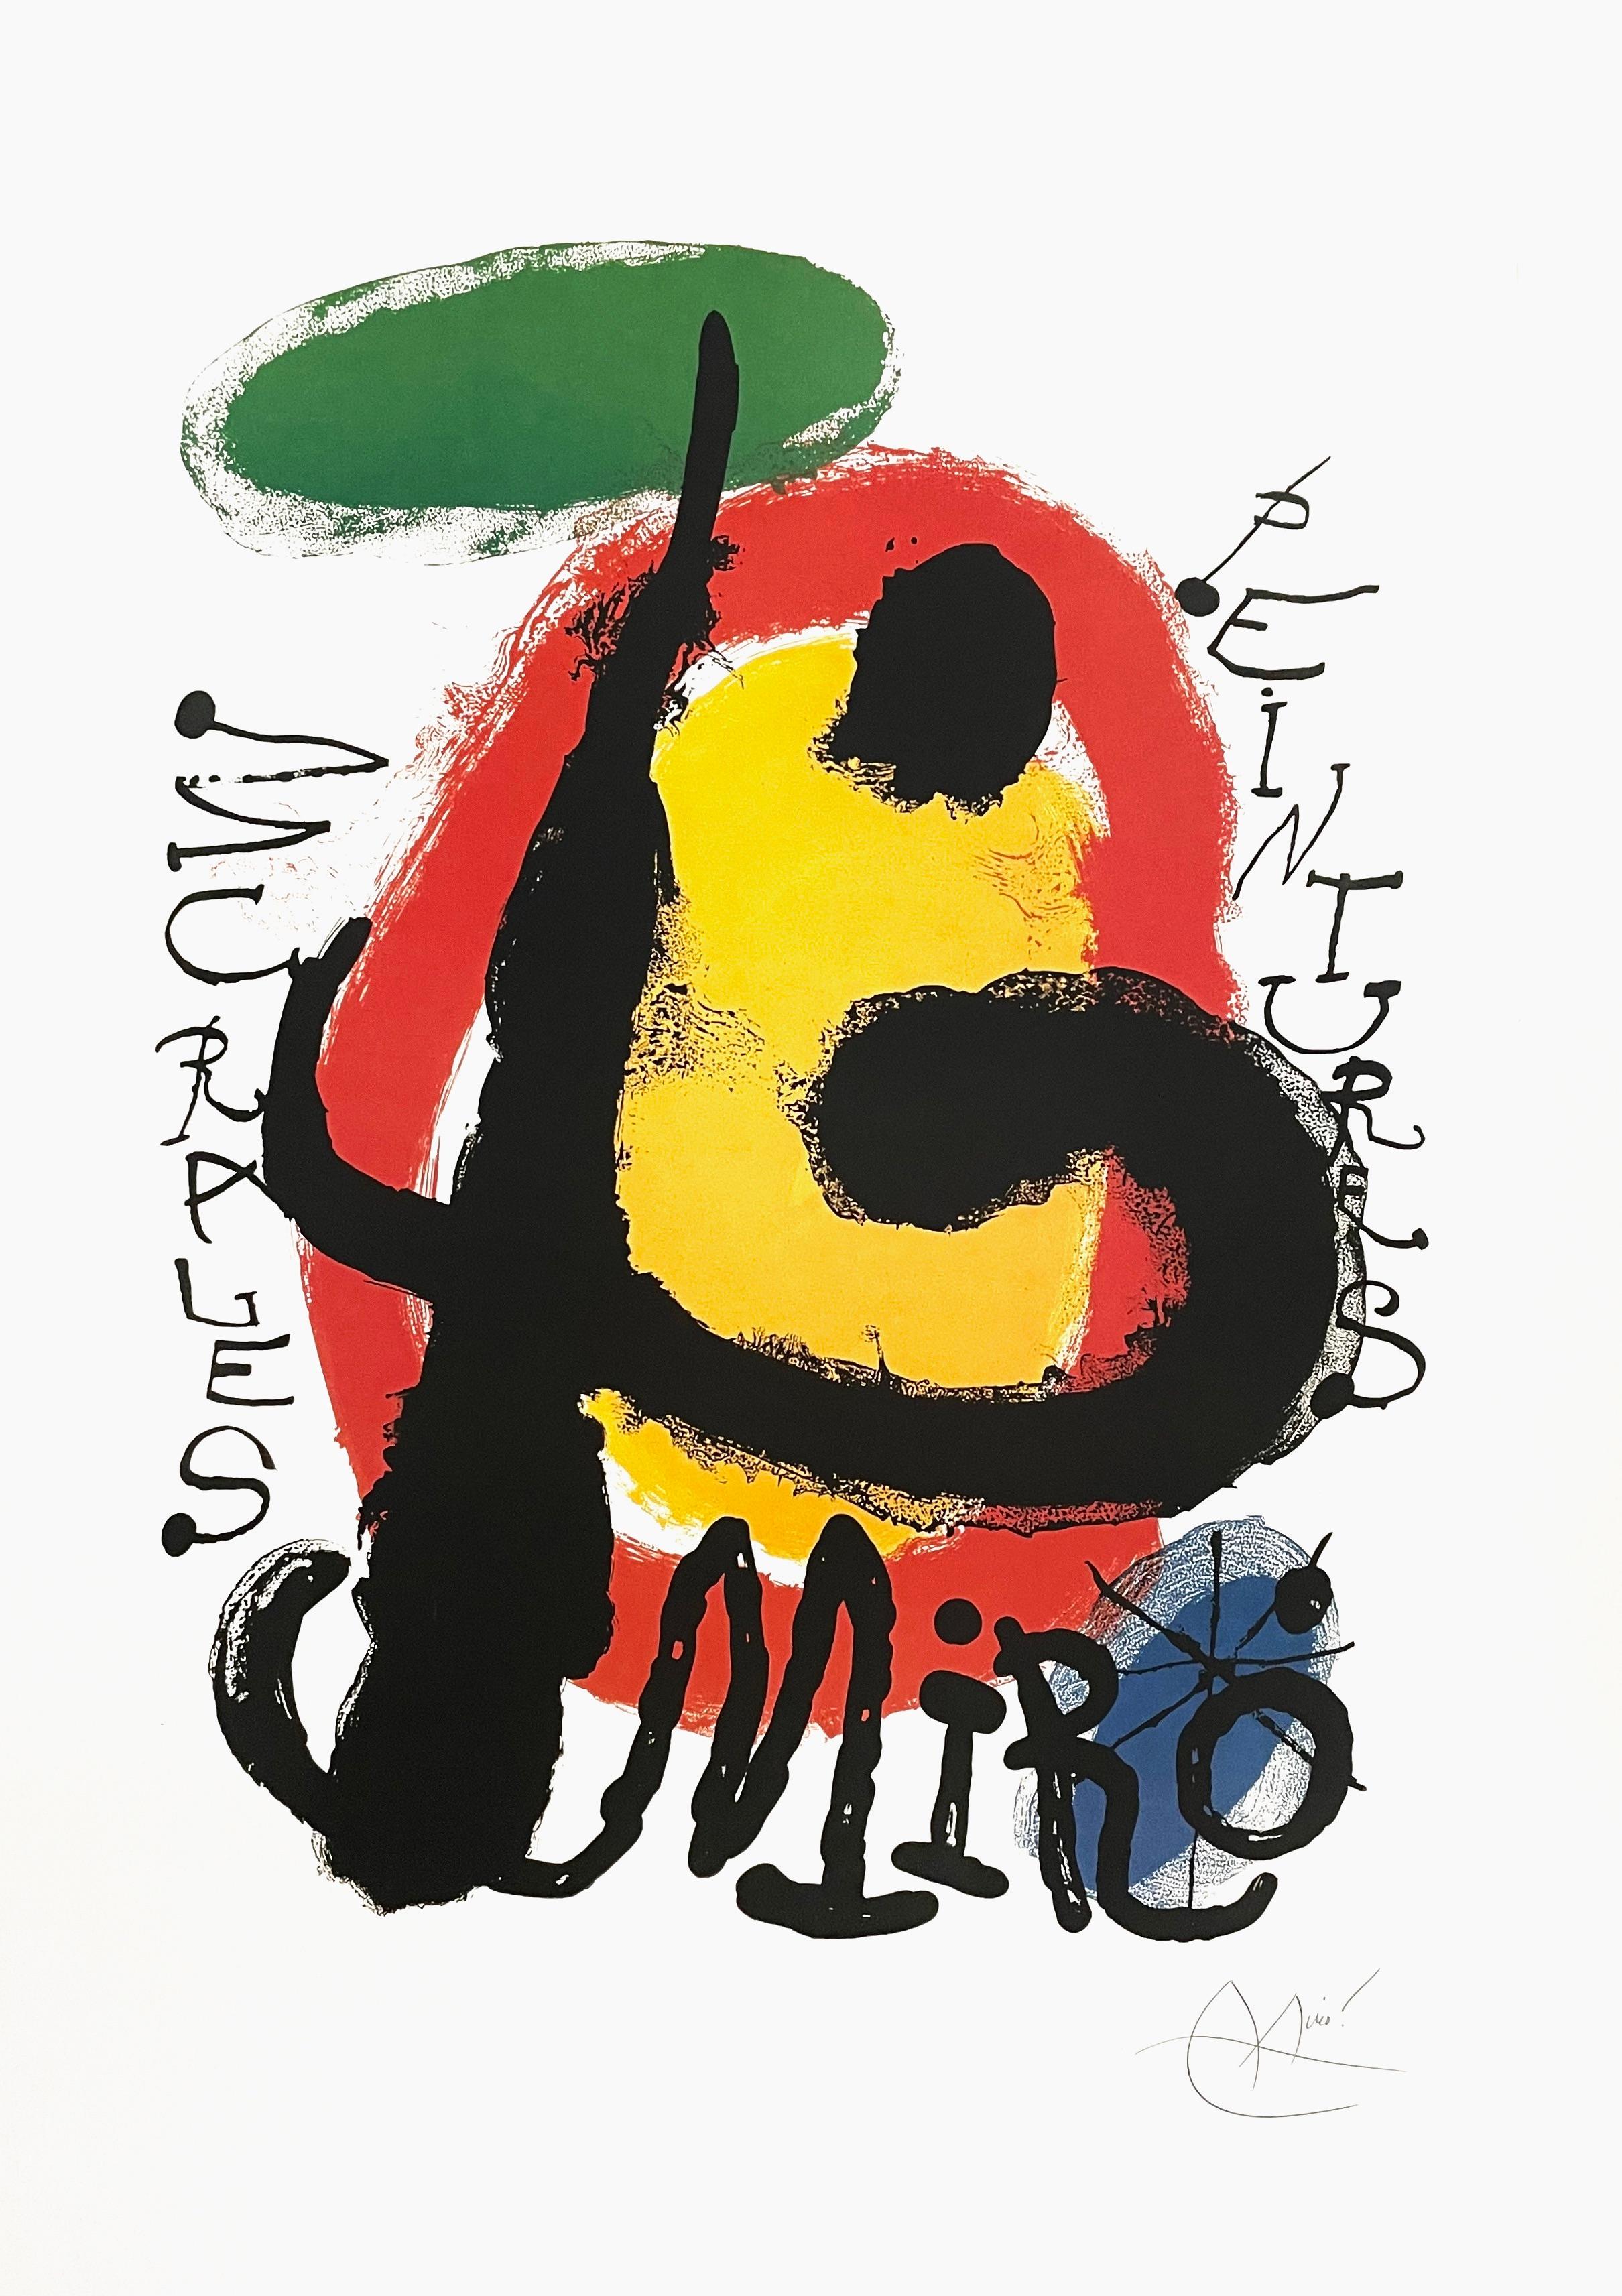 Joan Miró Abstract Print – Miro, Murales Peintures, 1961 Galerie Maeght